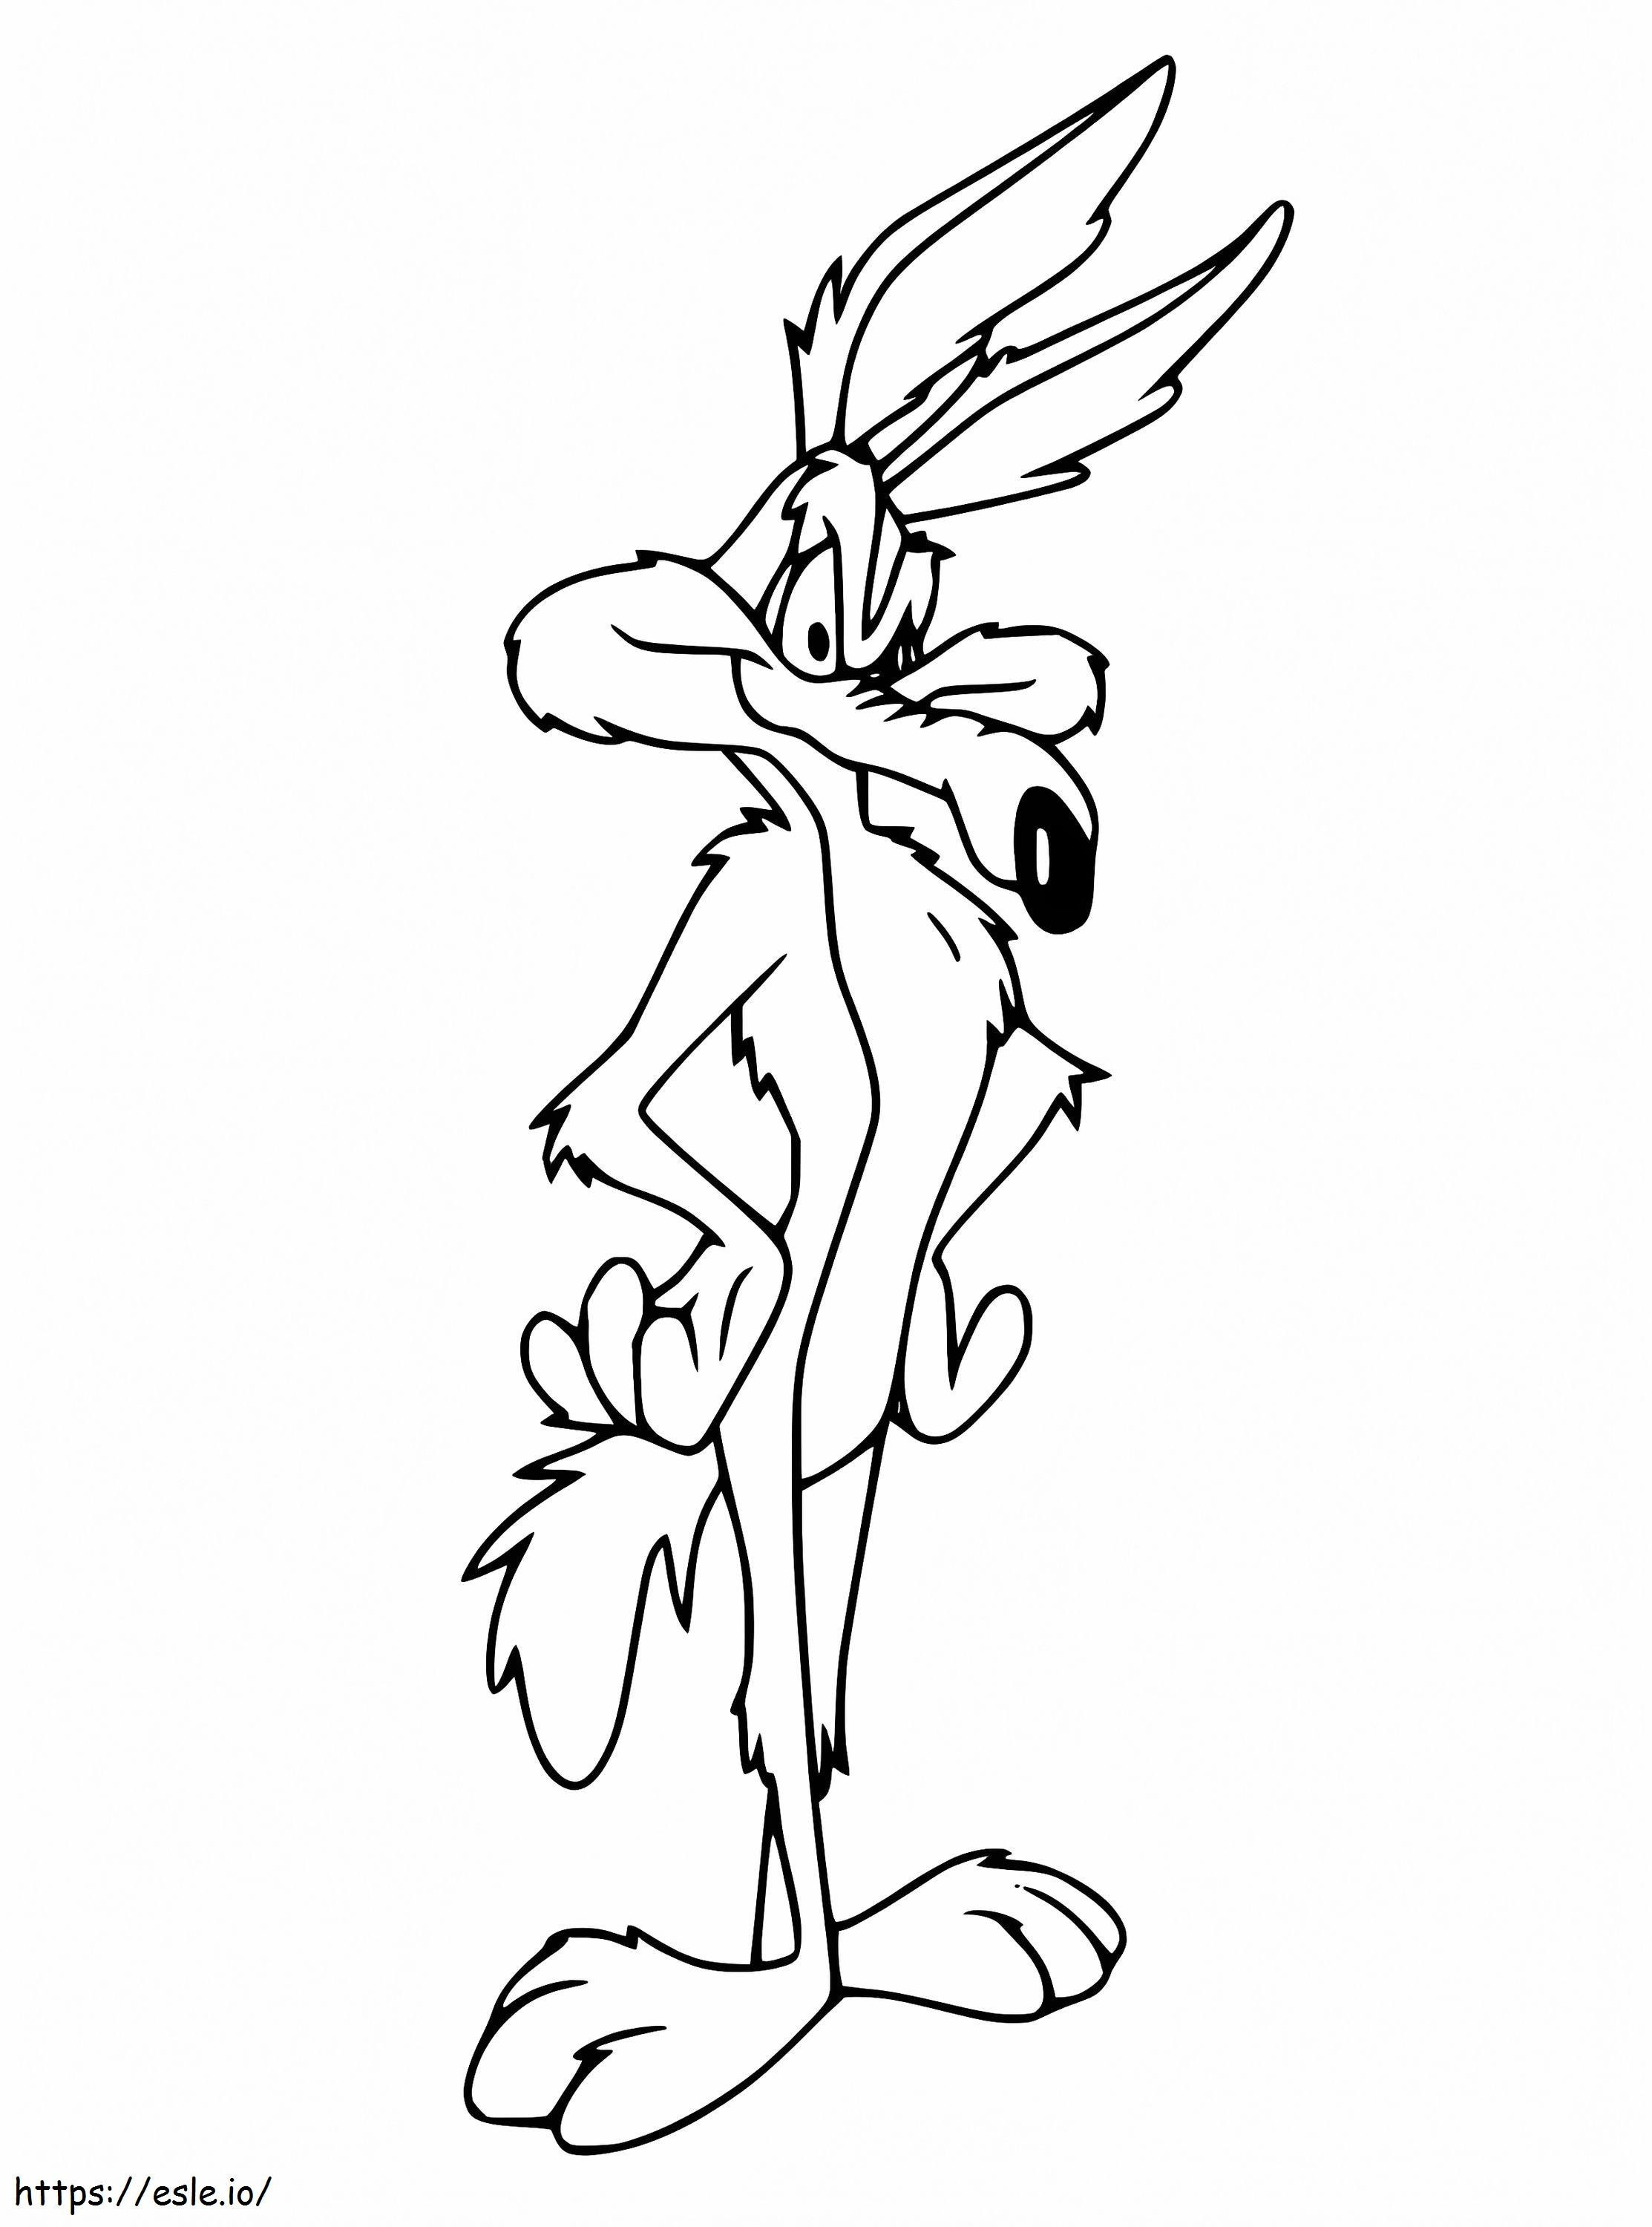 Wile E Coyote De Looney Tunes para colorir